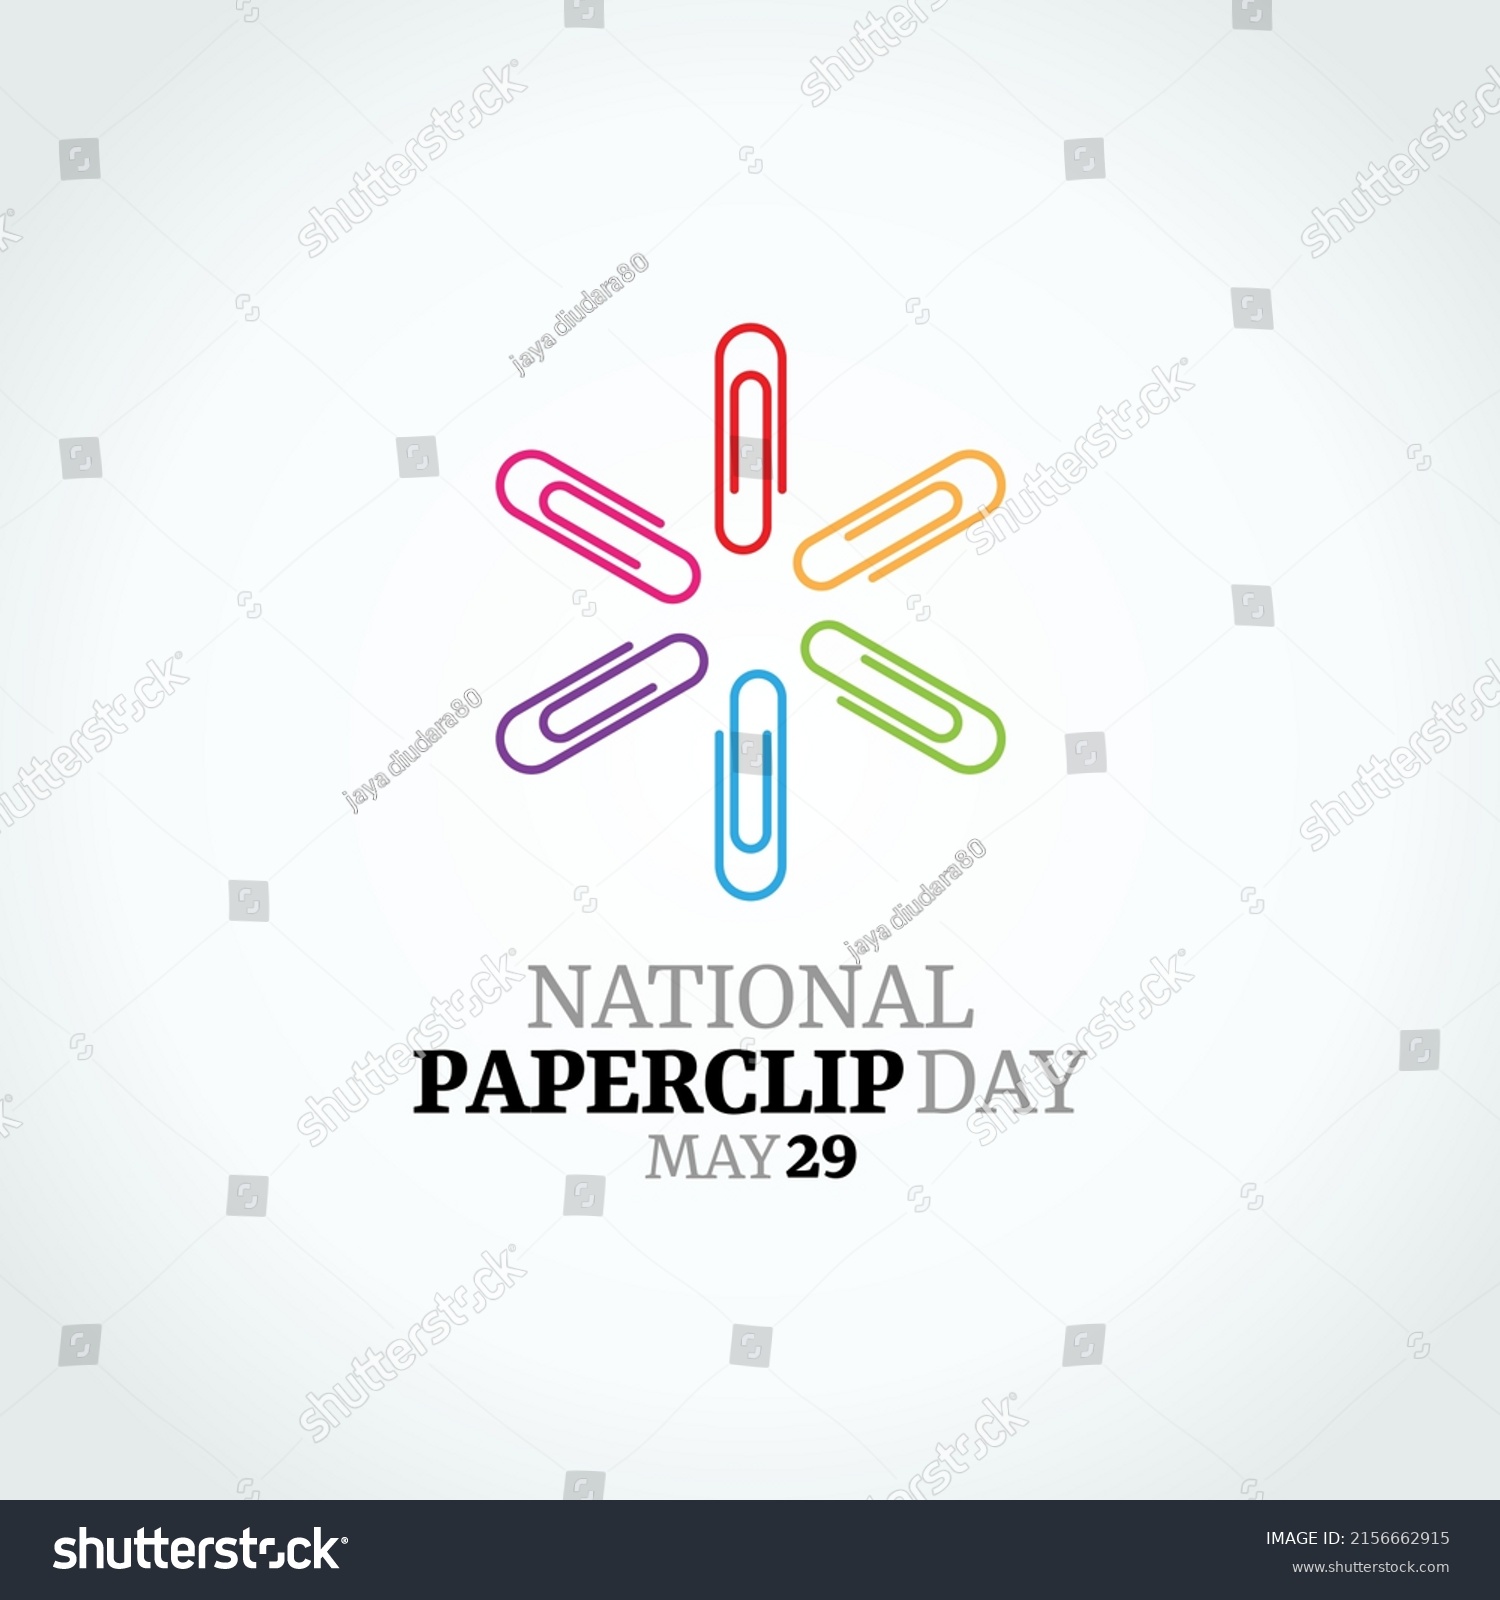 SVG of vector graphic of national paperclip day good for national paperclip day celebration. flat design. flyer design.flat illustration. svg